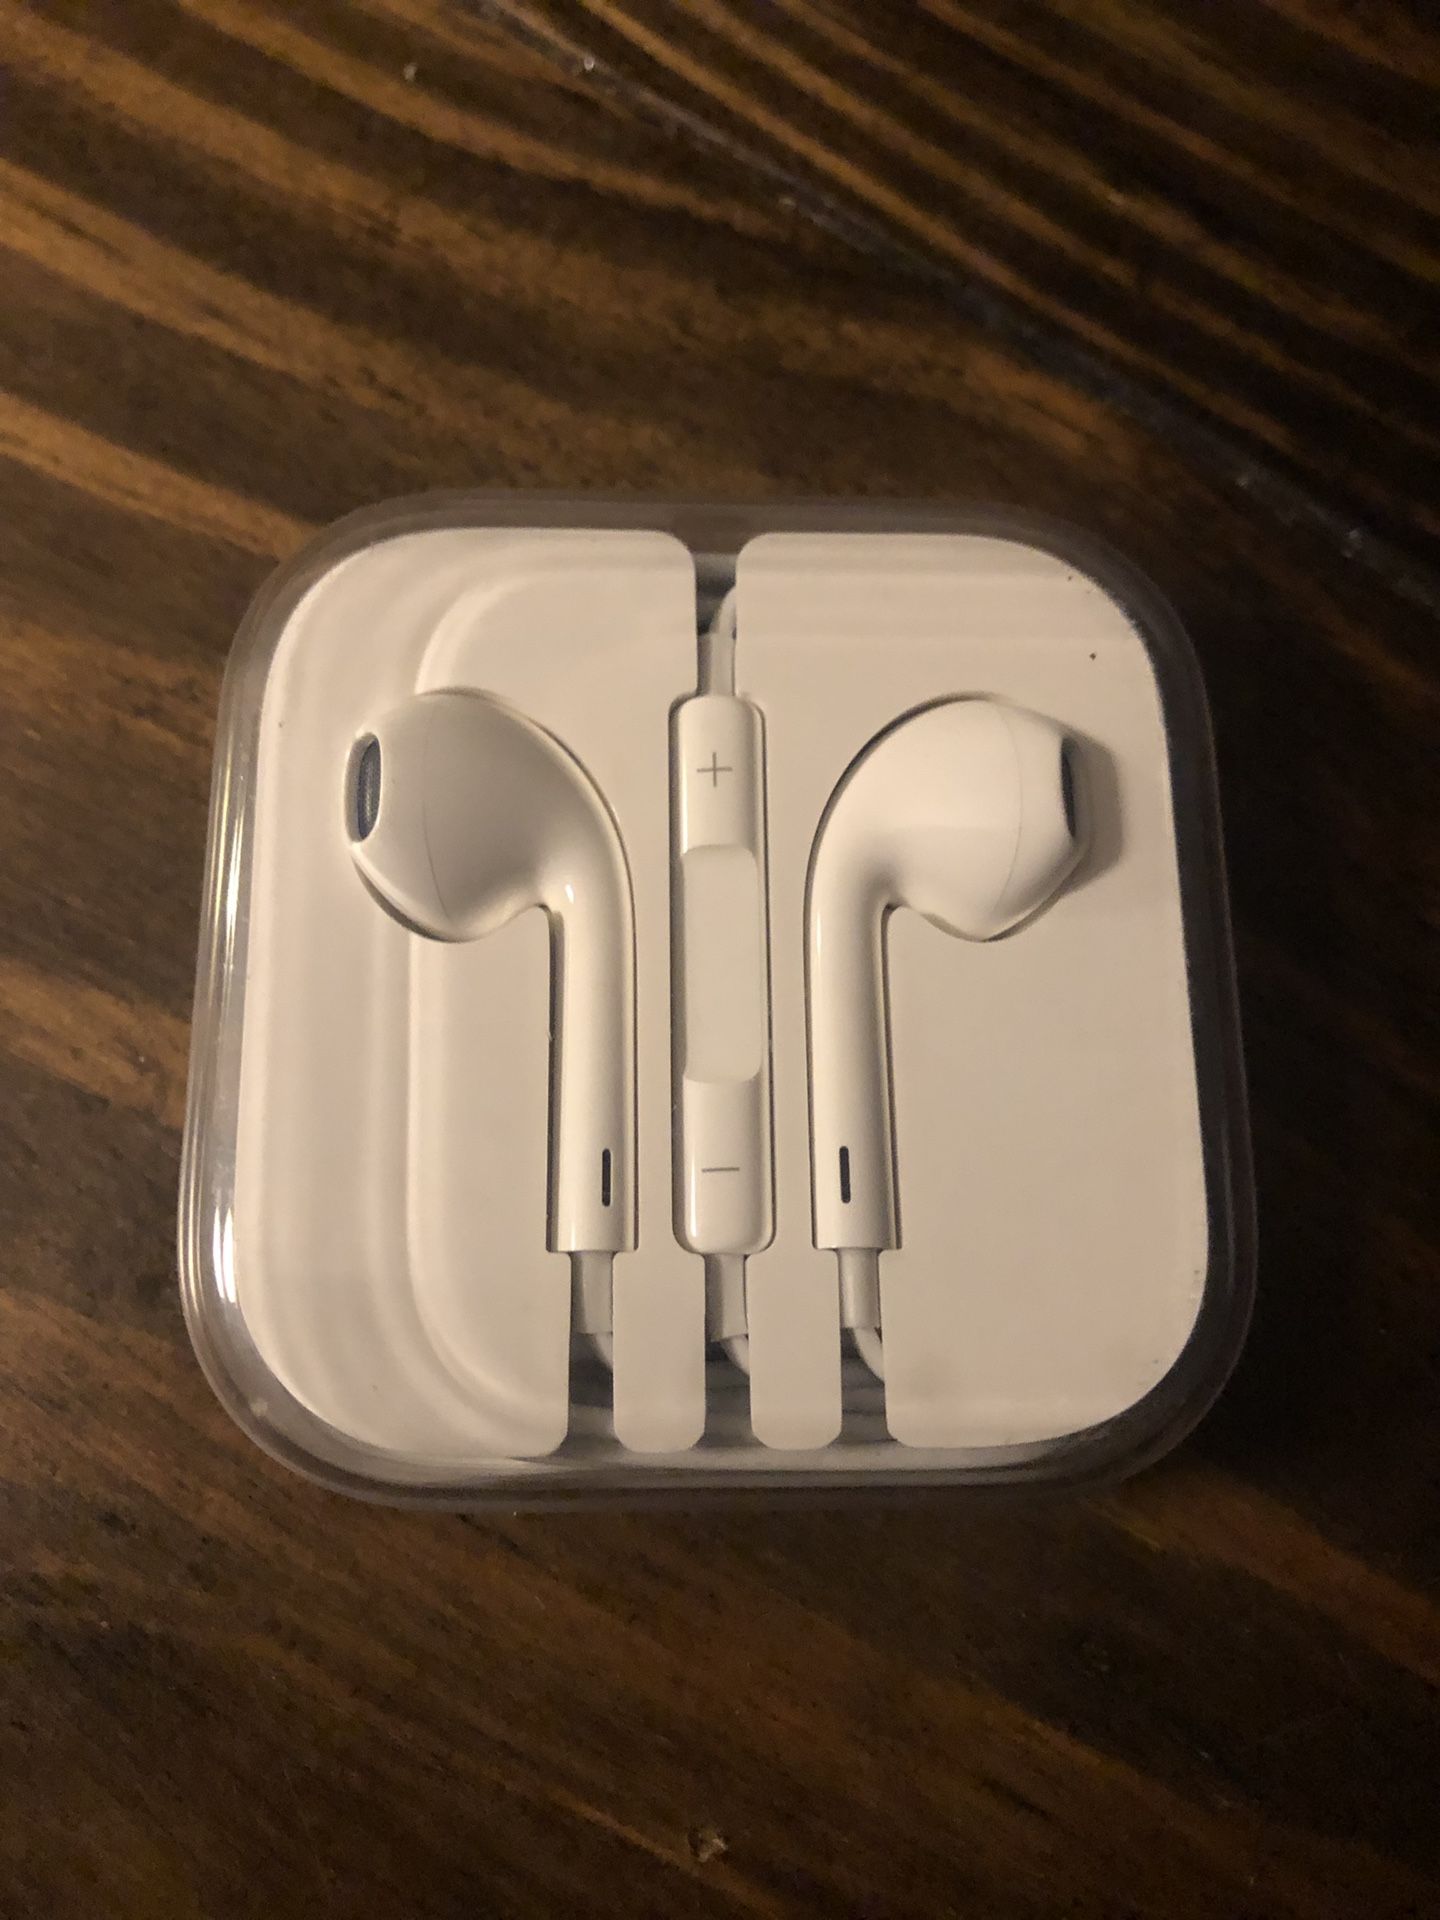 New apple headphones